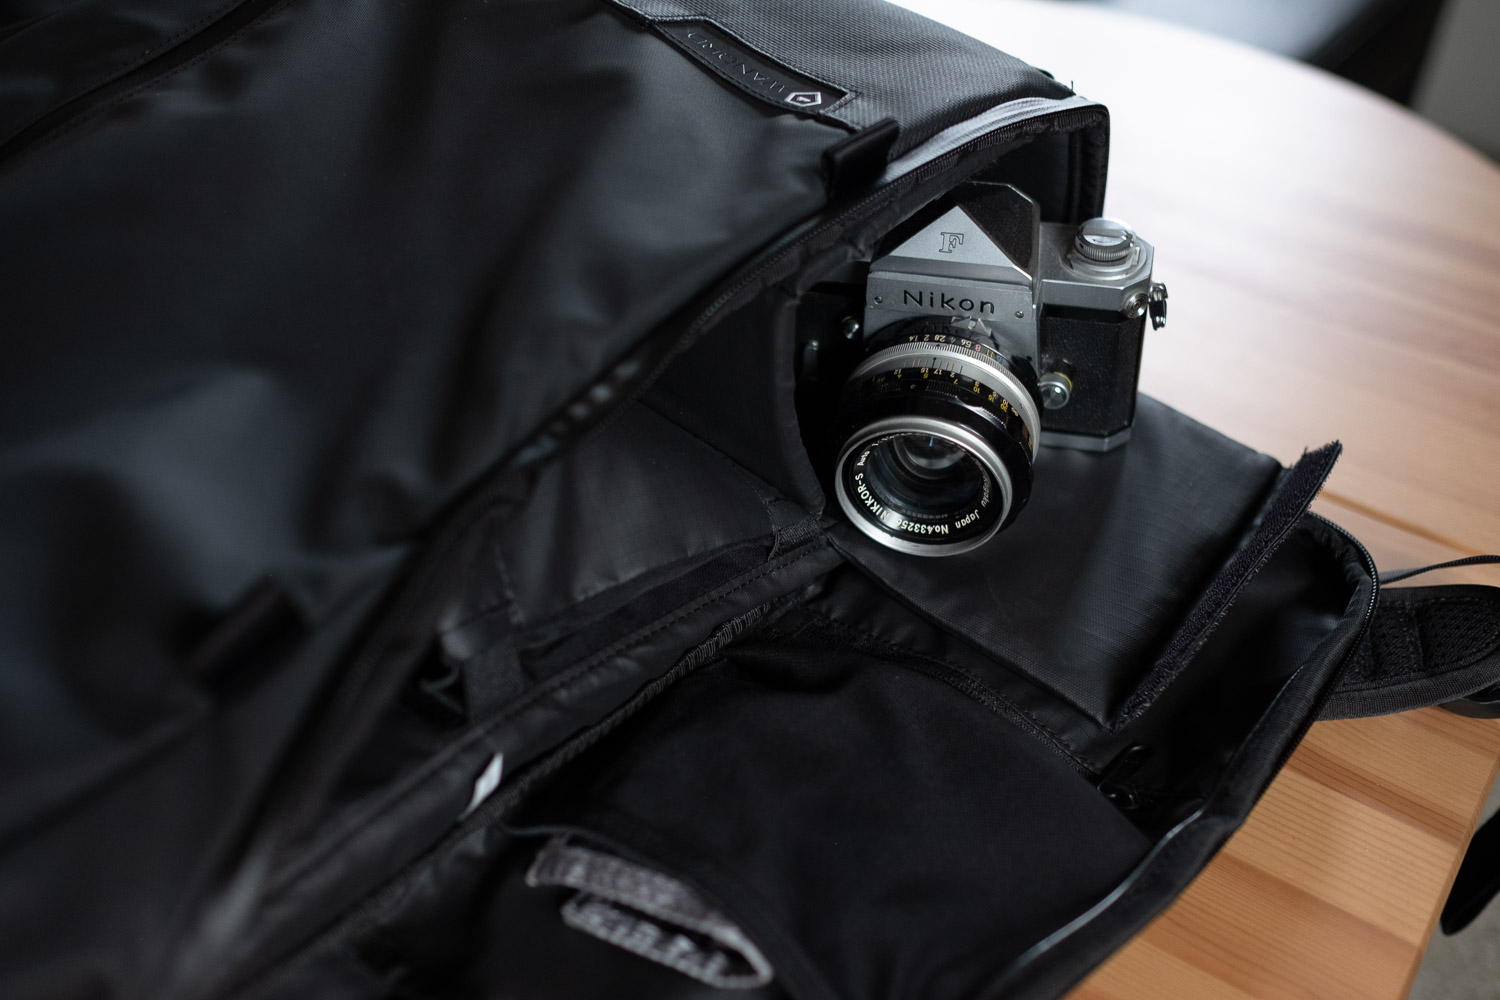 Timbuk2 Mirrorless Camera Sling Bag - Travel